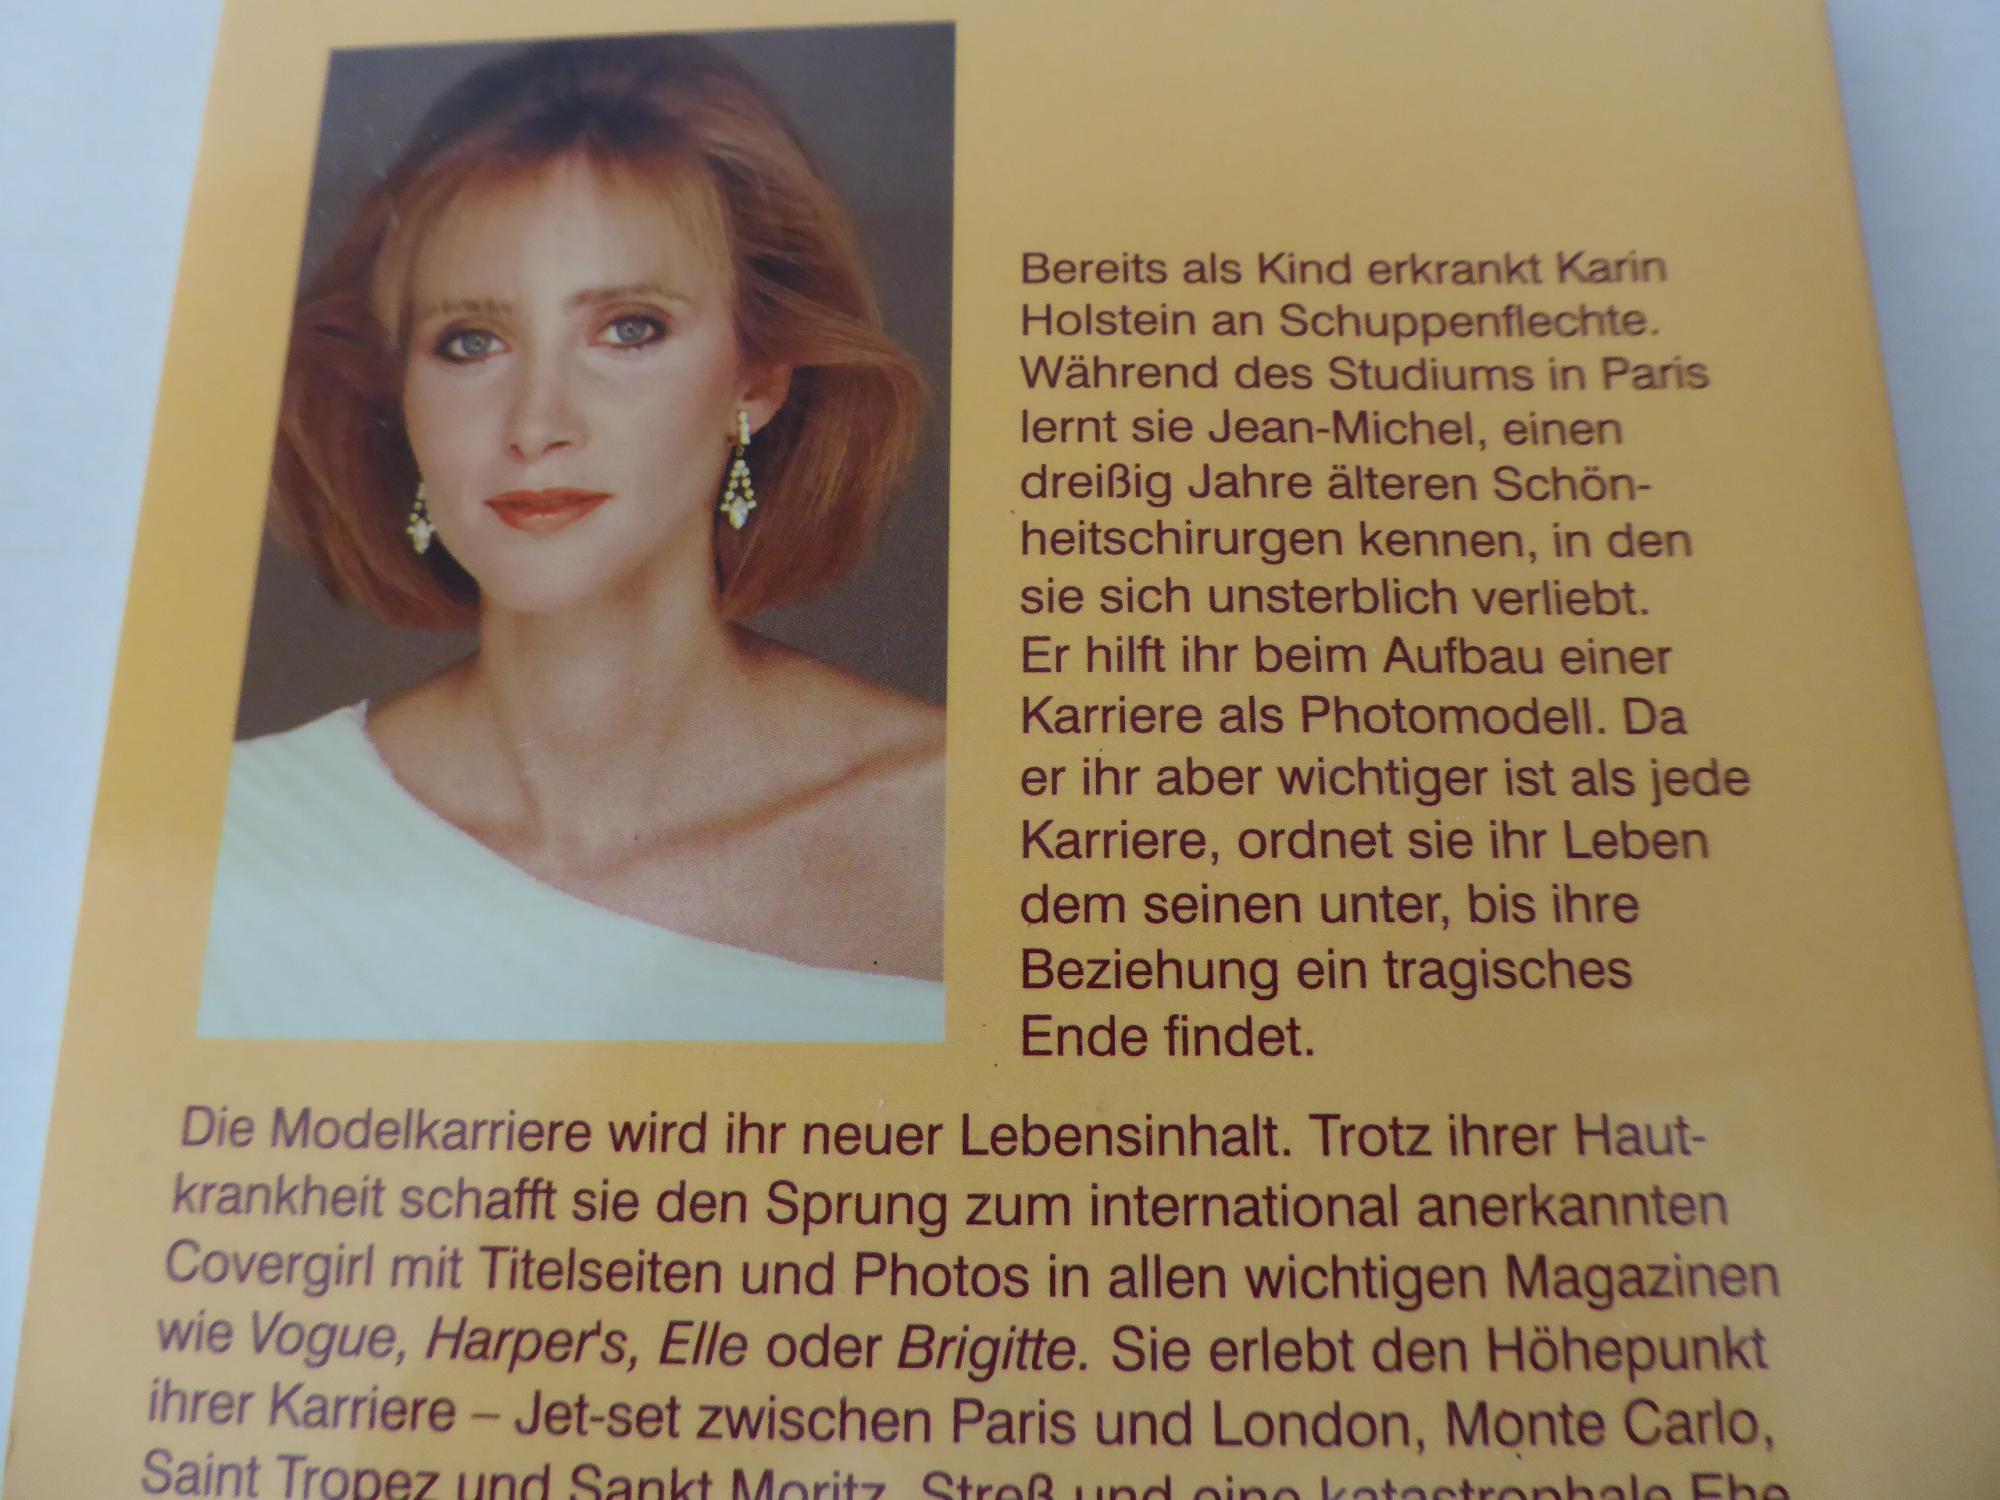 Cover Girl Covergirl Uncovered Die Geschichte Der Karin H Softcover Von Karin Holstein Wie Neu Softcover 03 Deichkieker Bucherkiste